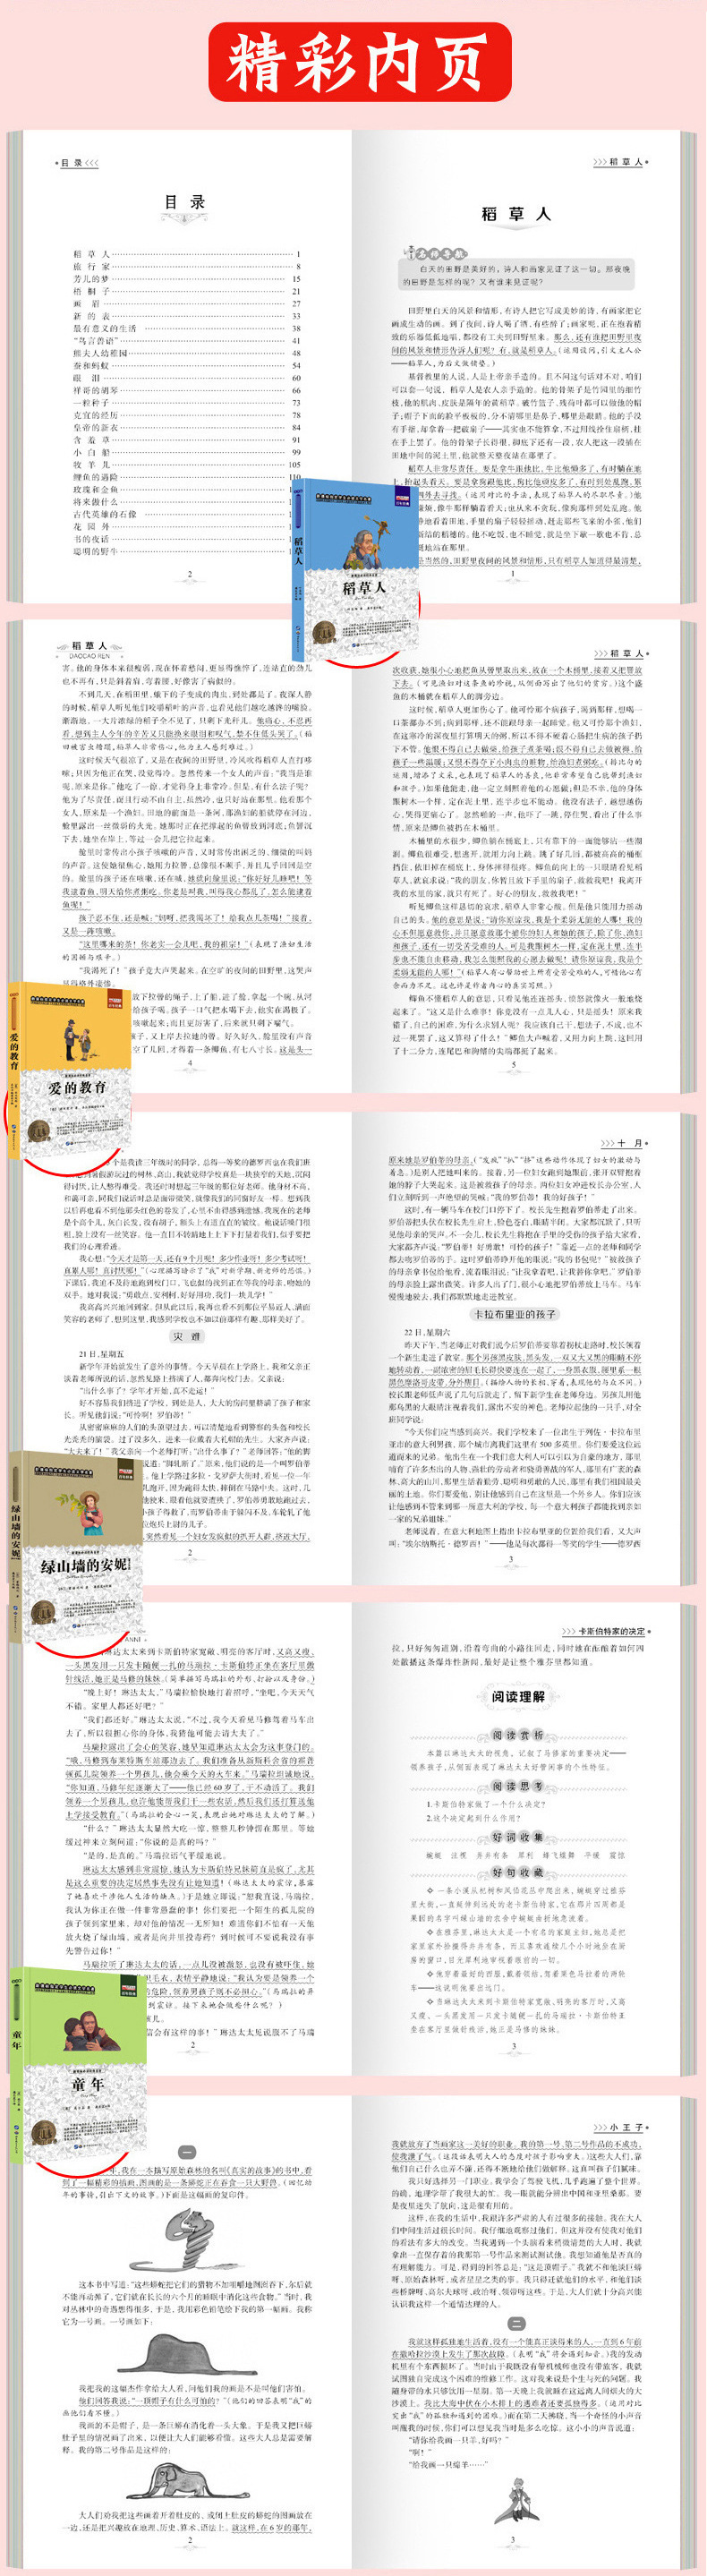 【中国直邮】I READING爱阅读《安娜●卡列尼娜》